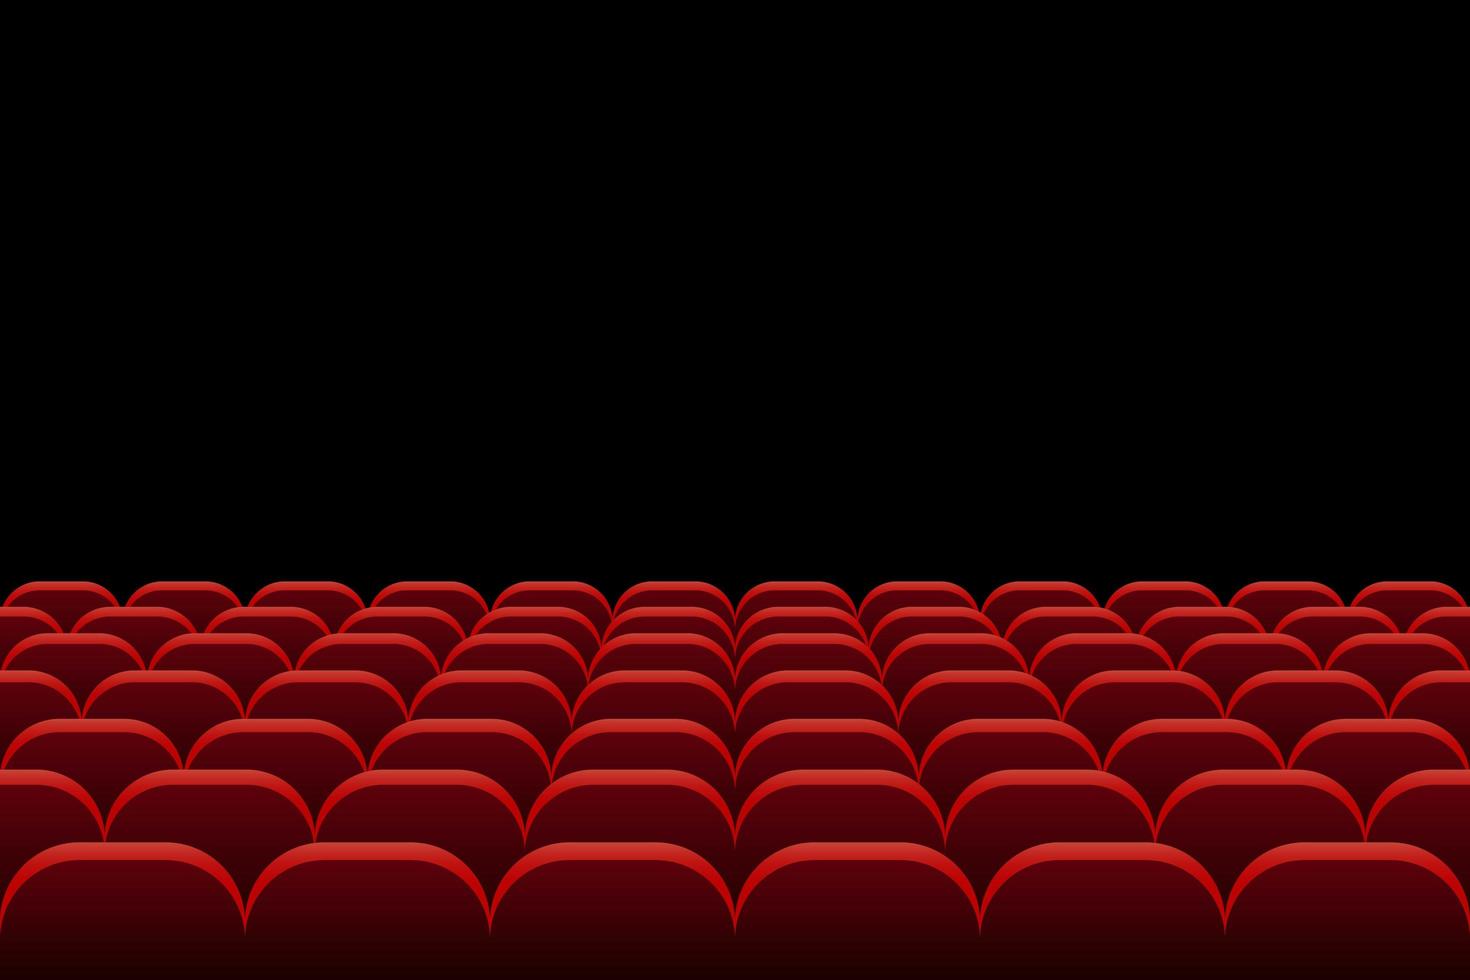 fileiras de assentos de cinema em preto vetor